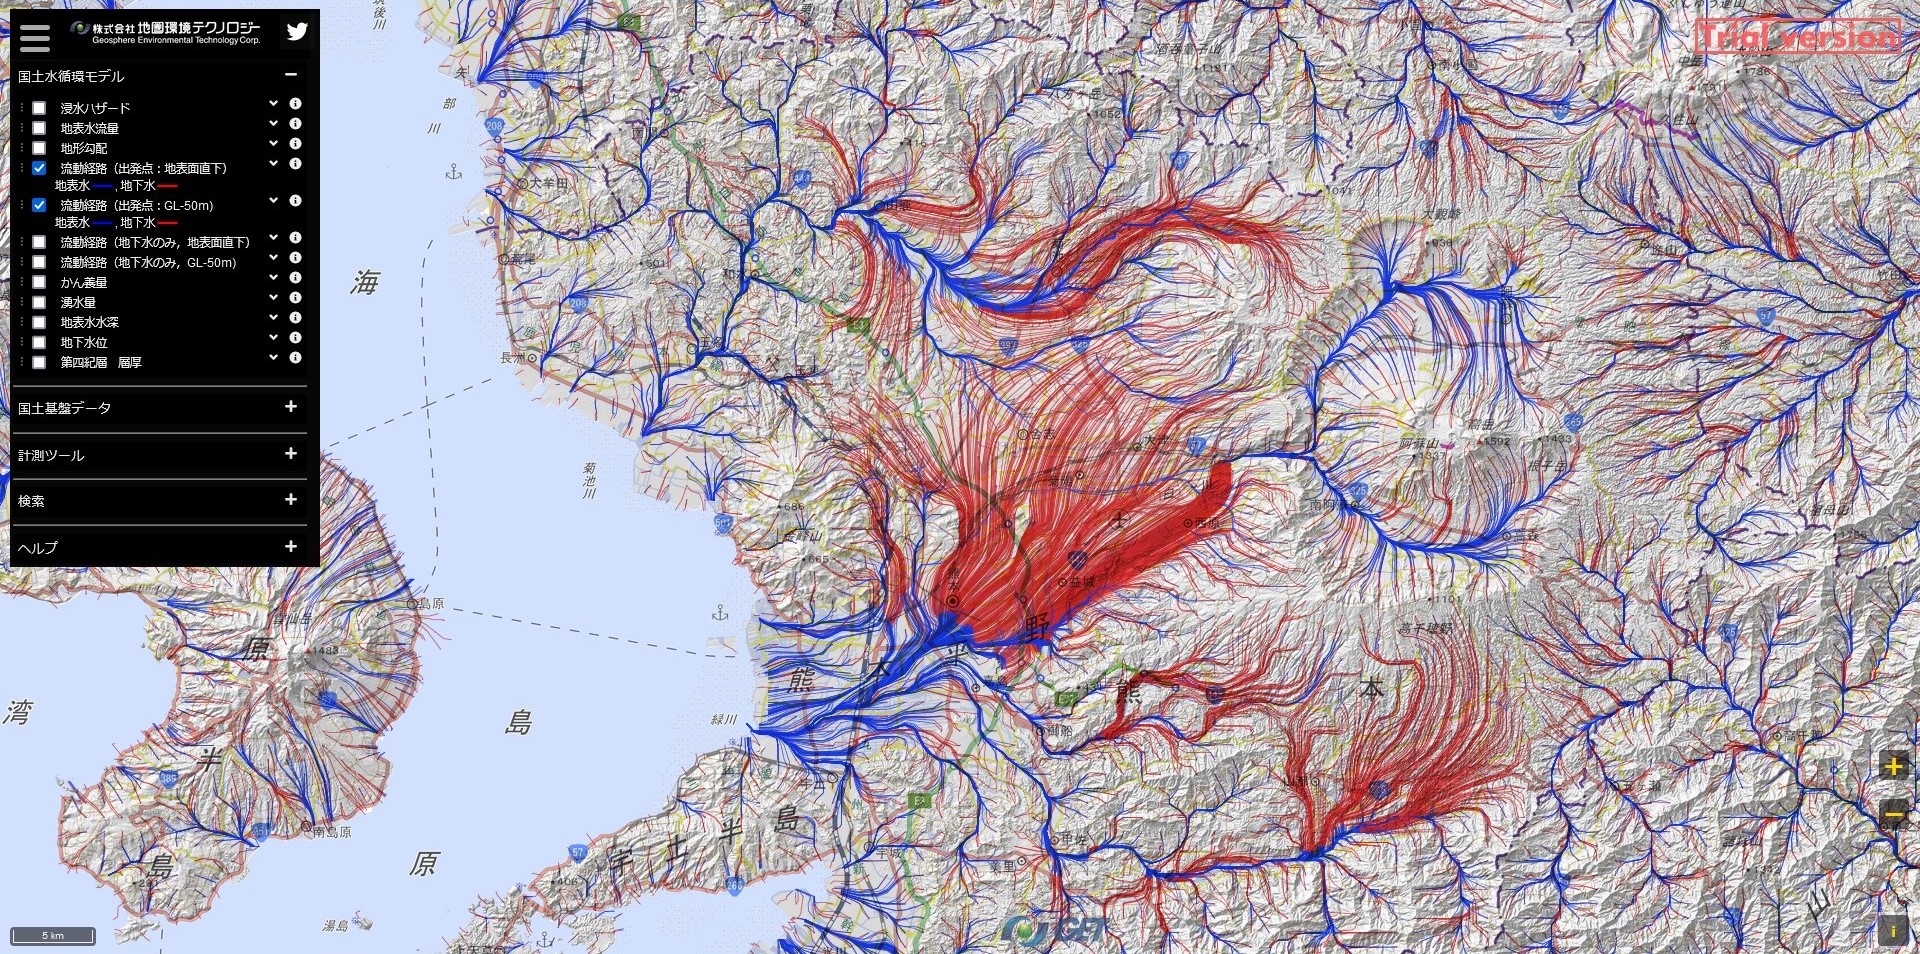 日本国土の「水循環シミュレーションデータ」提供開始。河川や地下水の